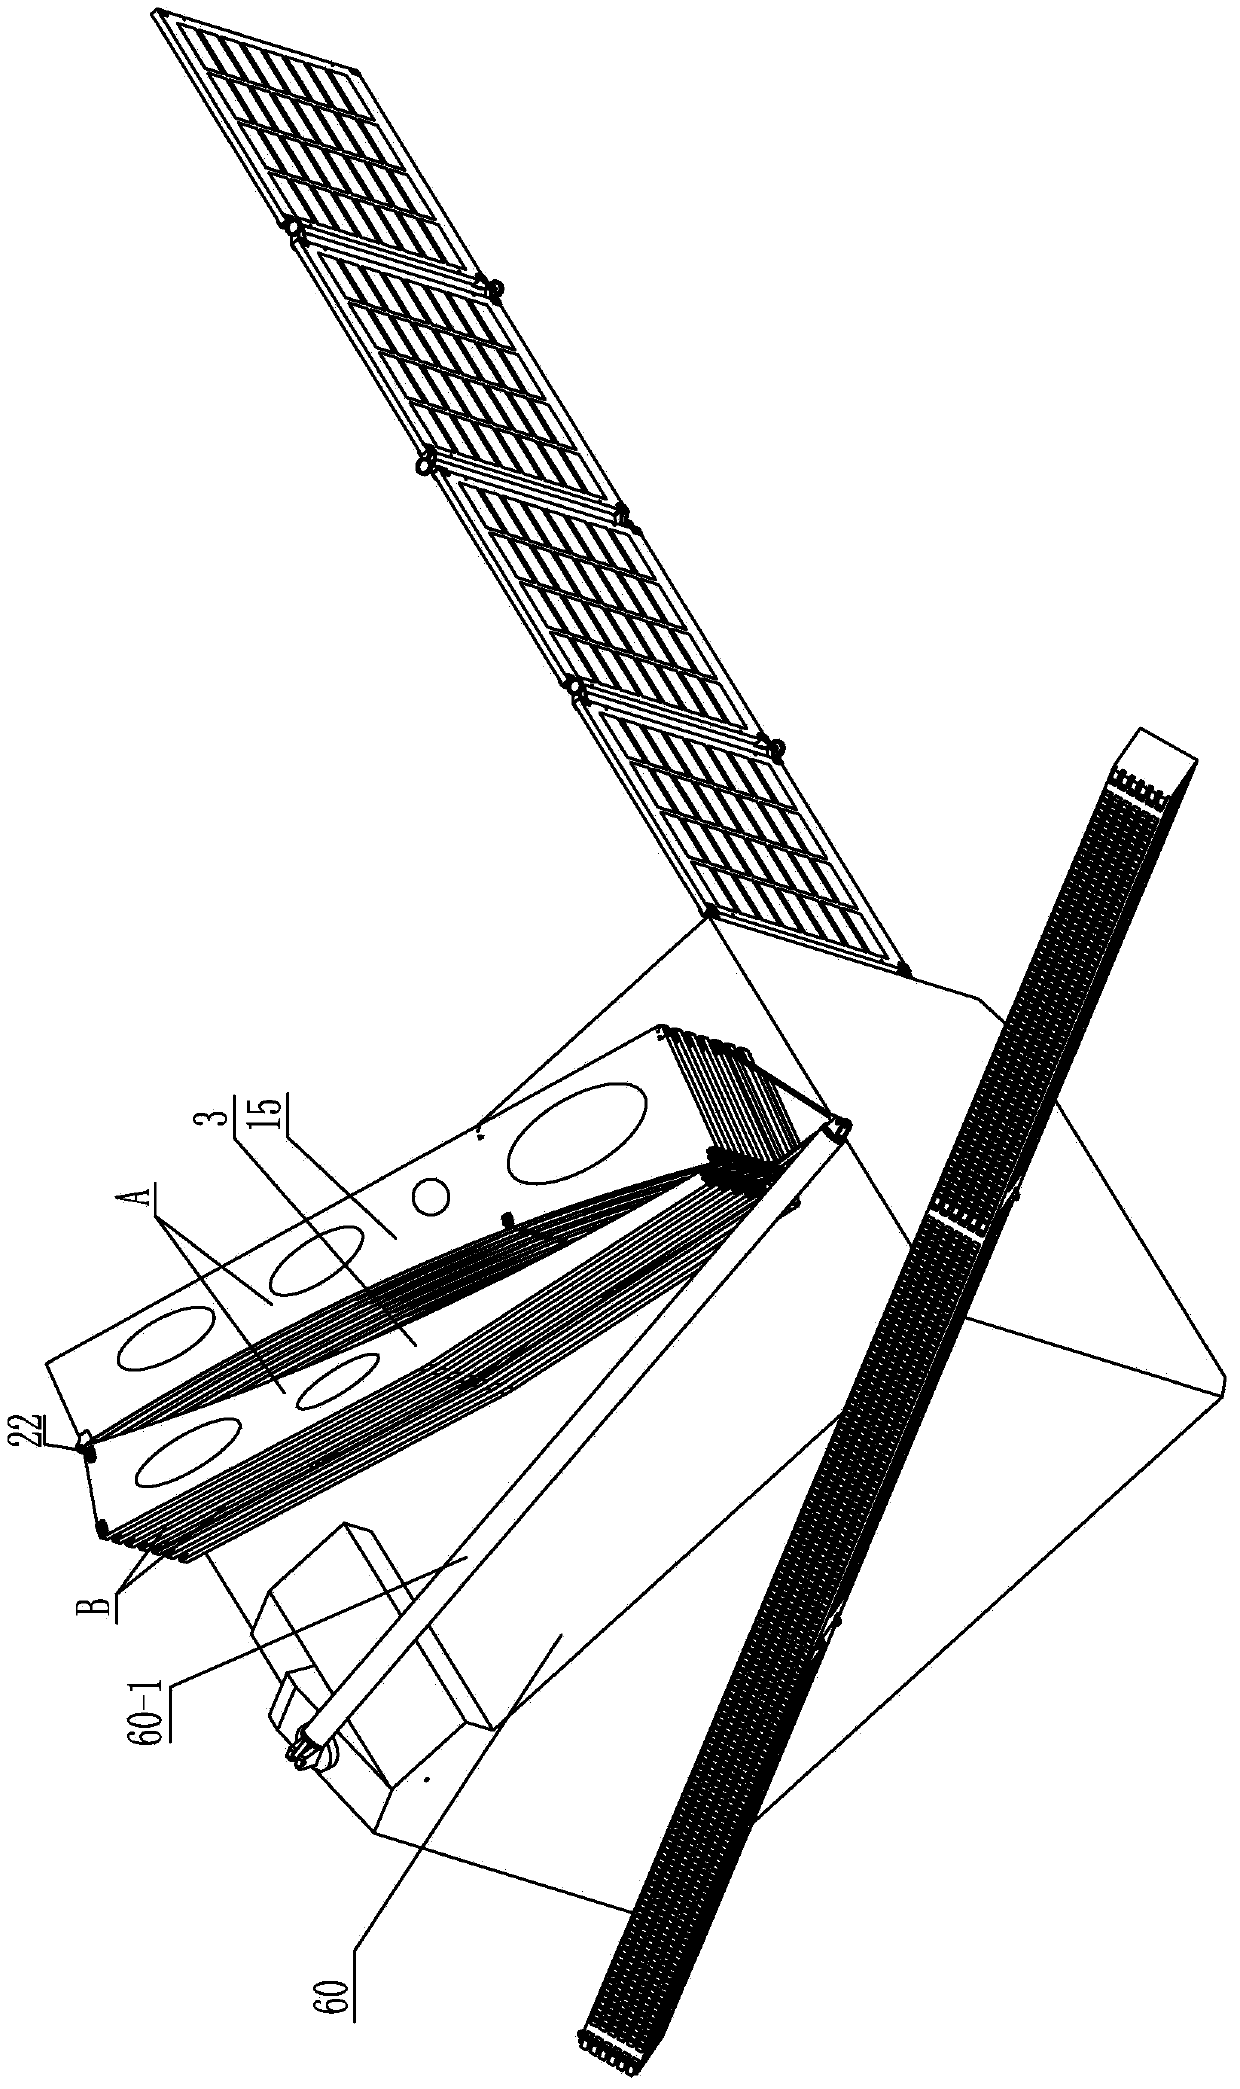 Modularized space parabolic cylinder antenna folding and unfolding mechanism